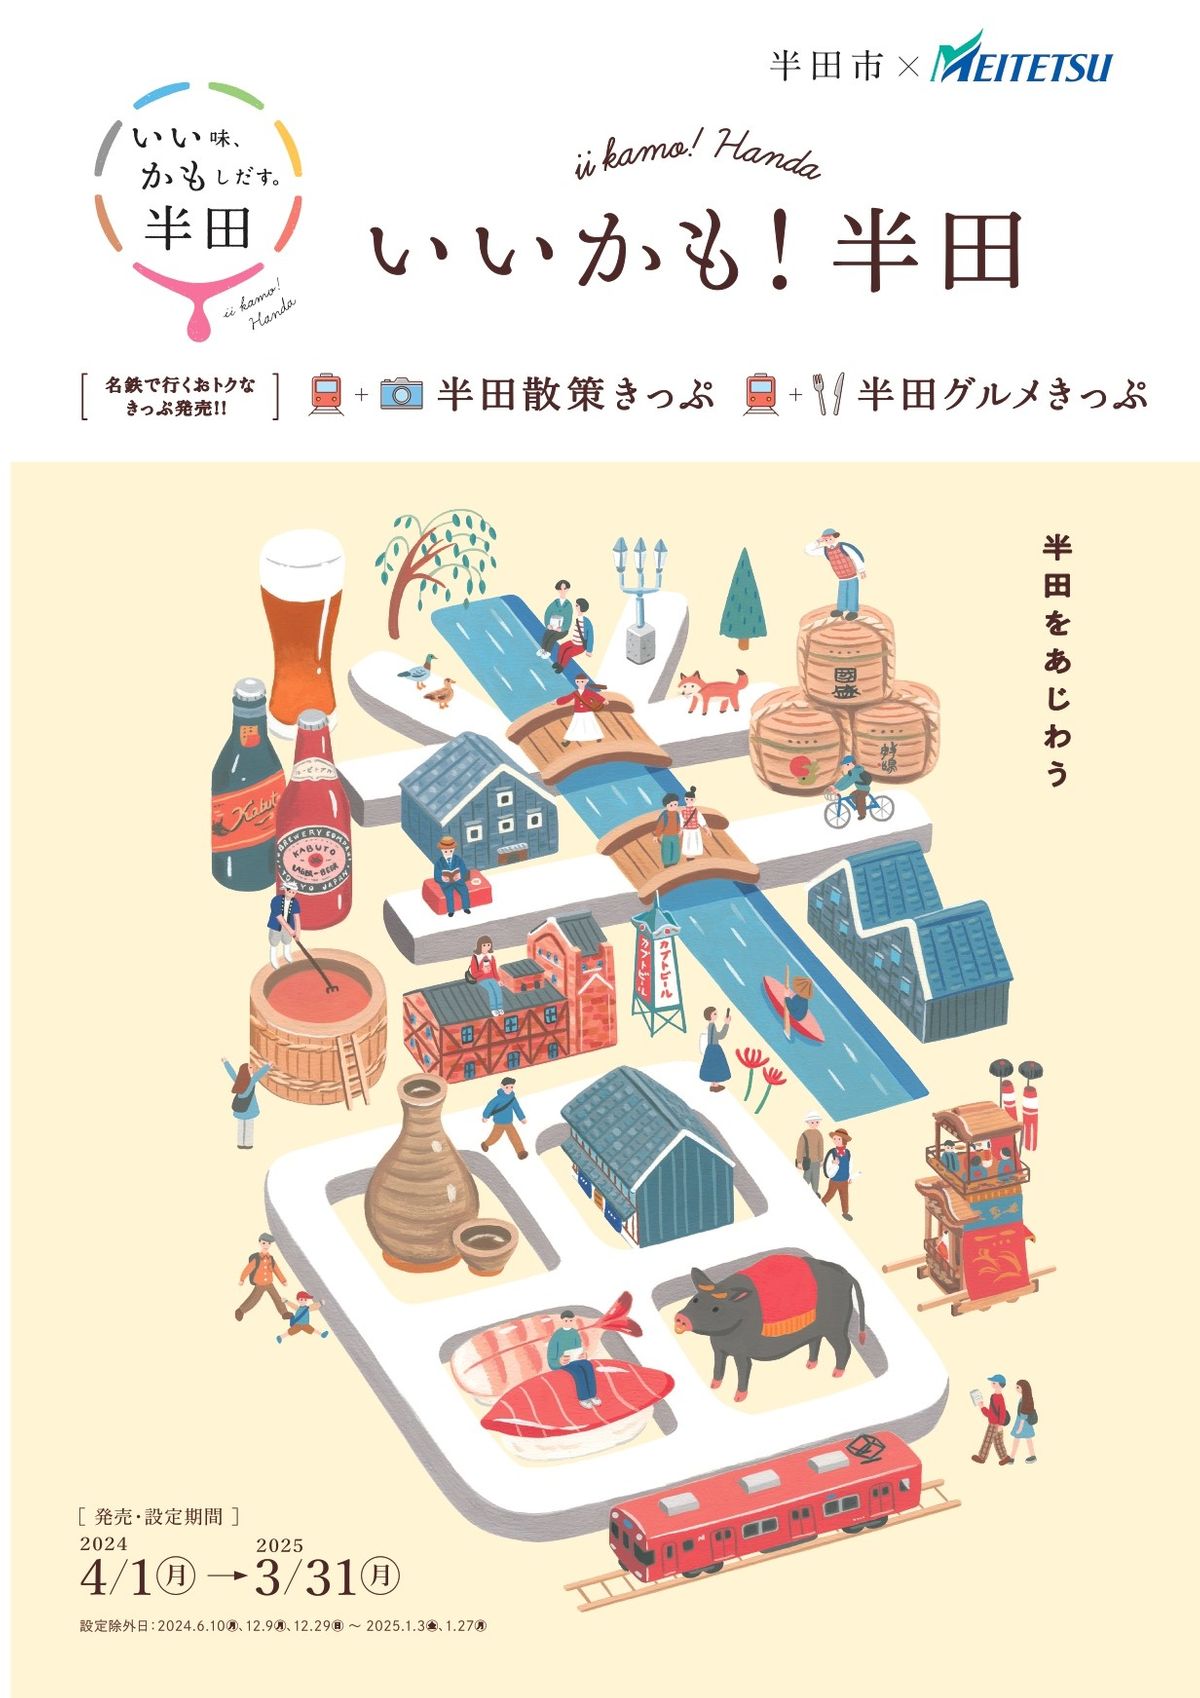 名鉄が愛知県半田市と提携した特典付き切符を発売　街歩きや地元グルメを満喫